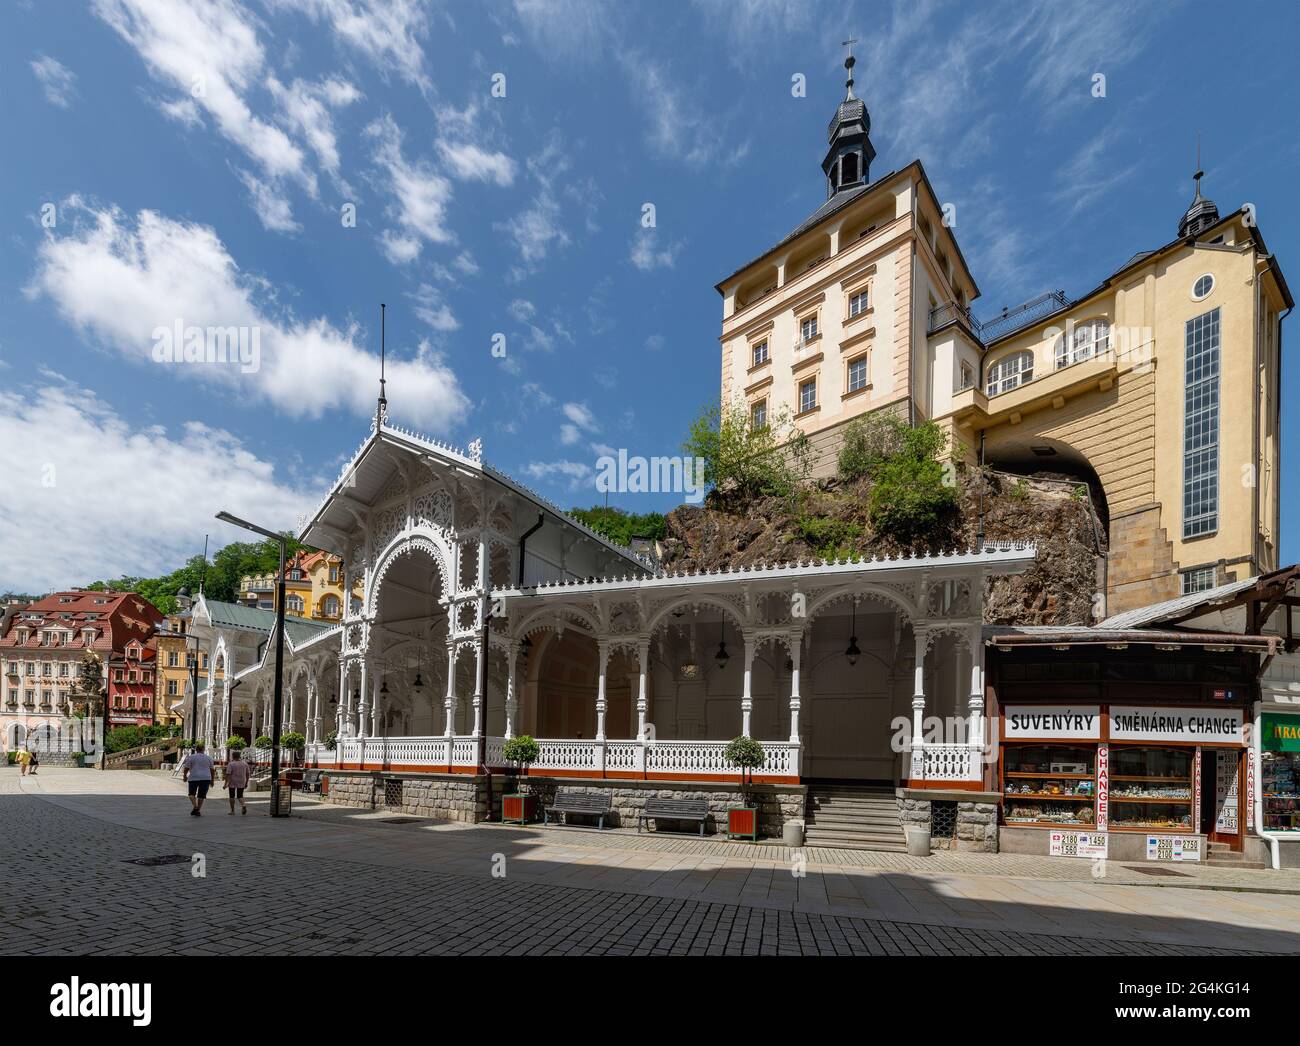 Karlovy Vary, Tschechische Republik - 21. Juni 2021: Sonniger Tag im großen tschechischen Kurort Karlovy Vary (Karlsbad) im westlichen Teil Tschechiens Stockfoto